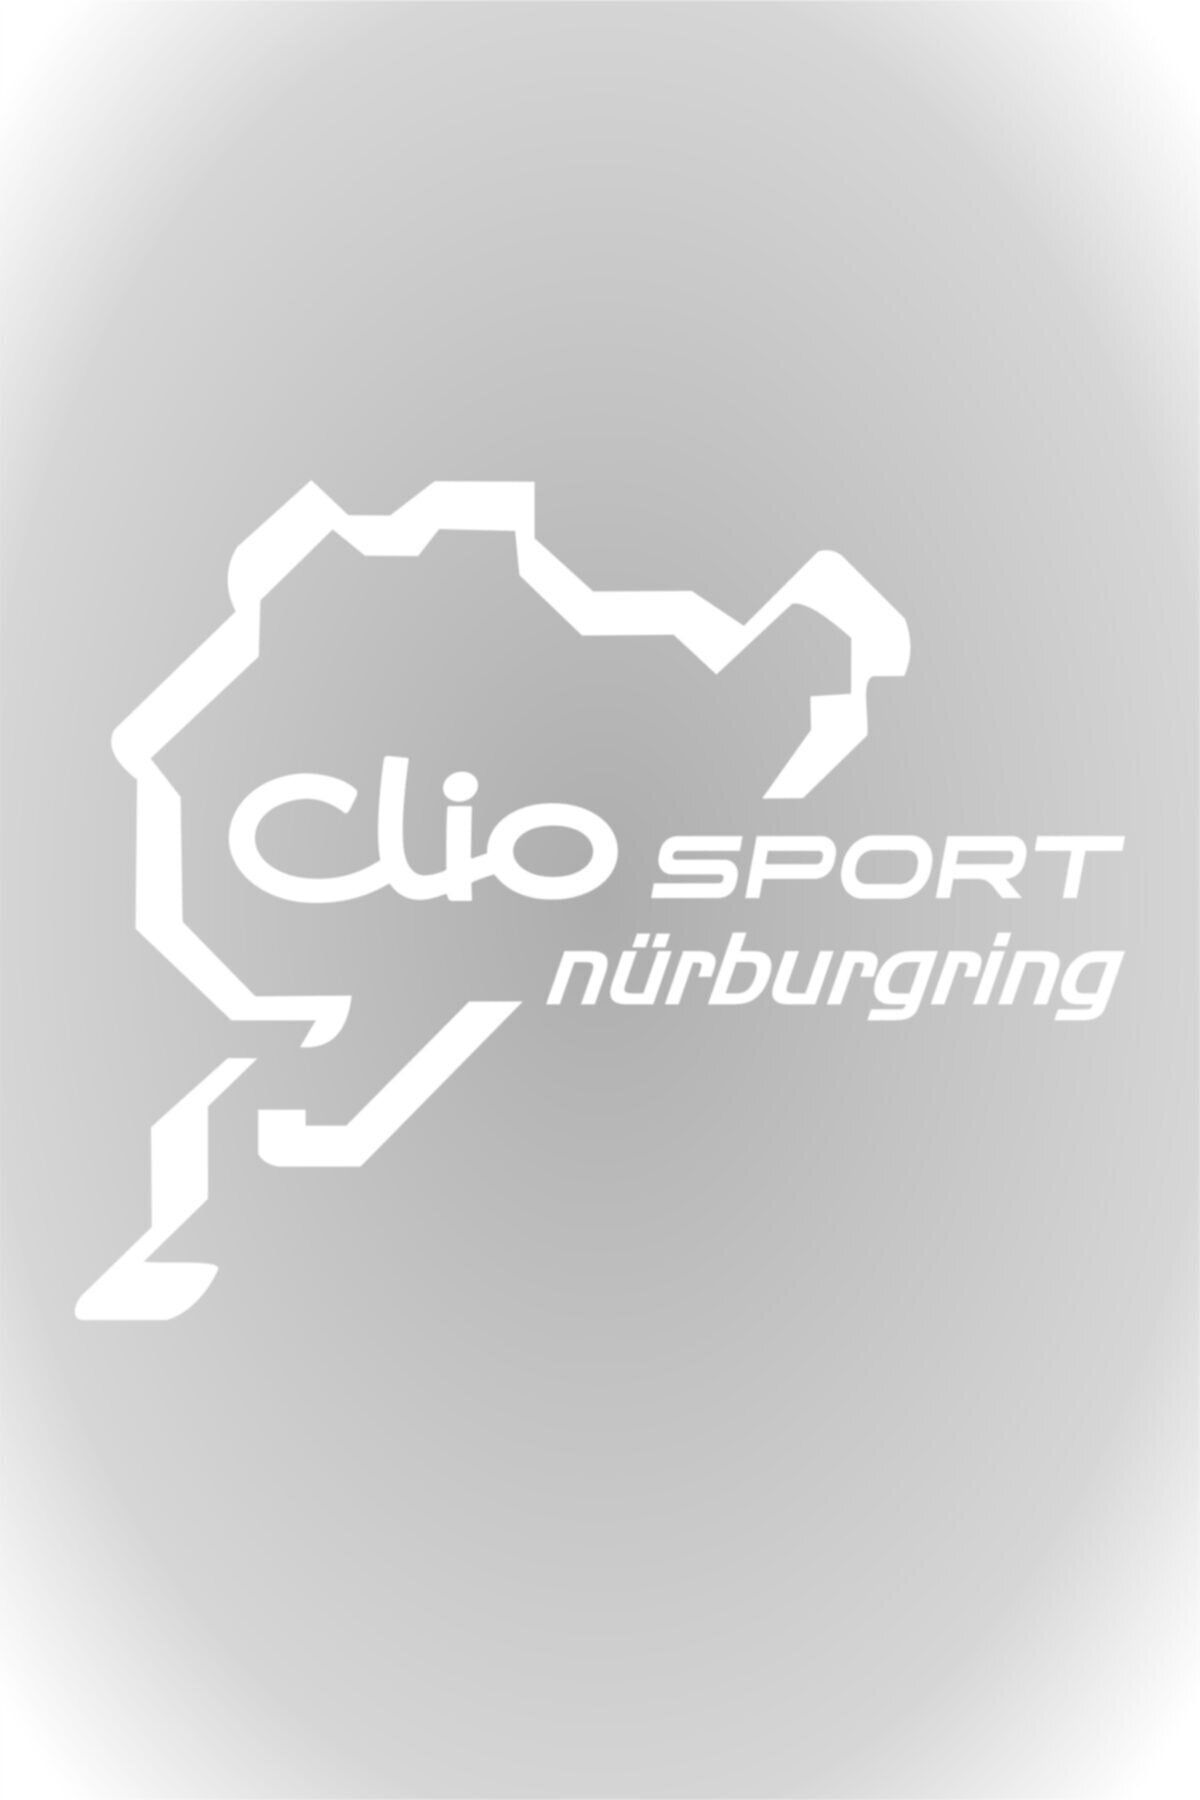 HMNL Clio Sport Nürburgring Oto Sticker Araba Sticker Beyaz 15 X 12 Cm